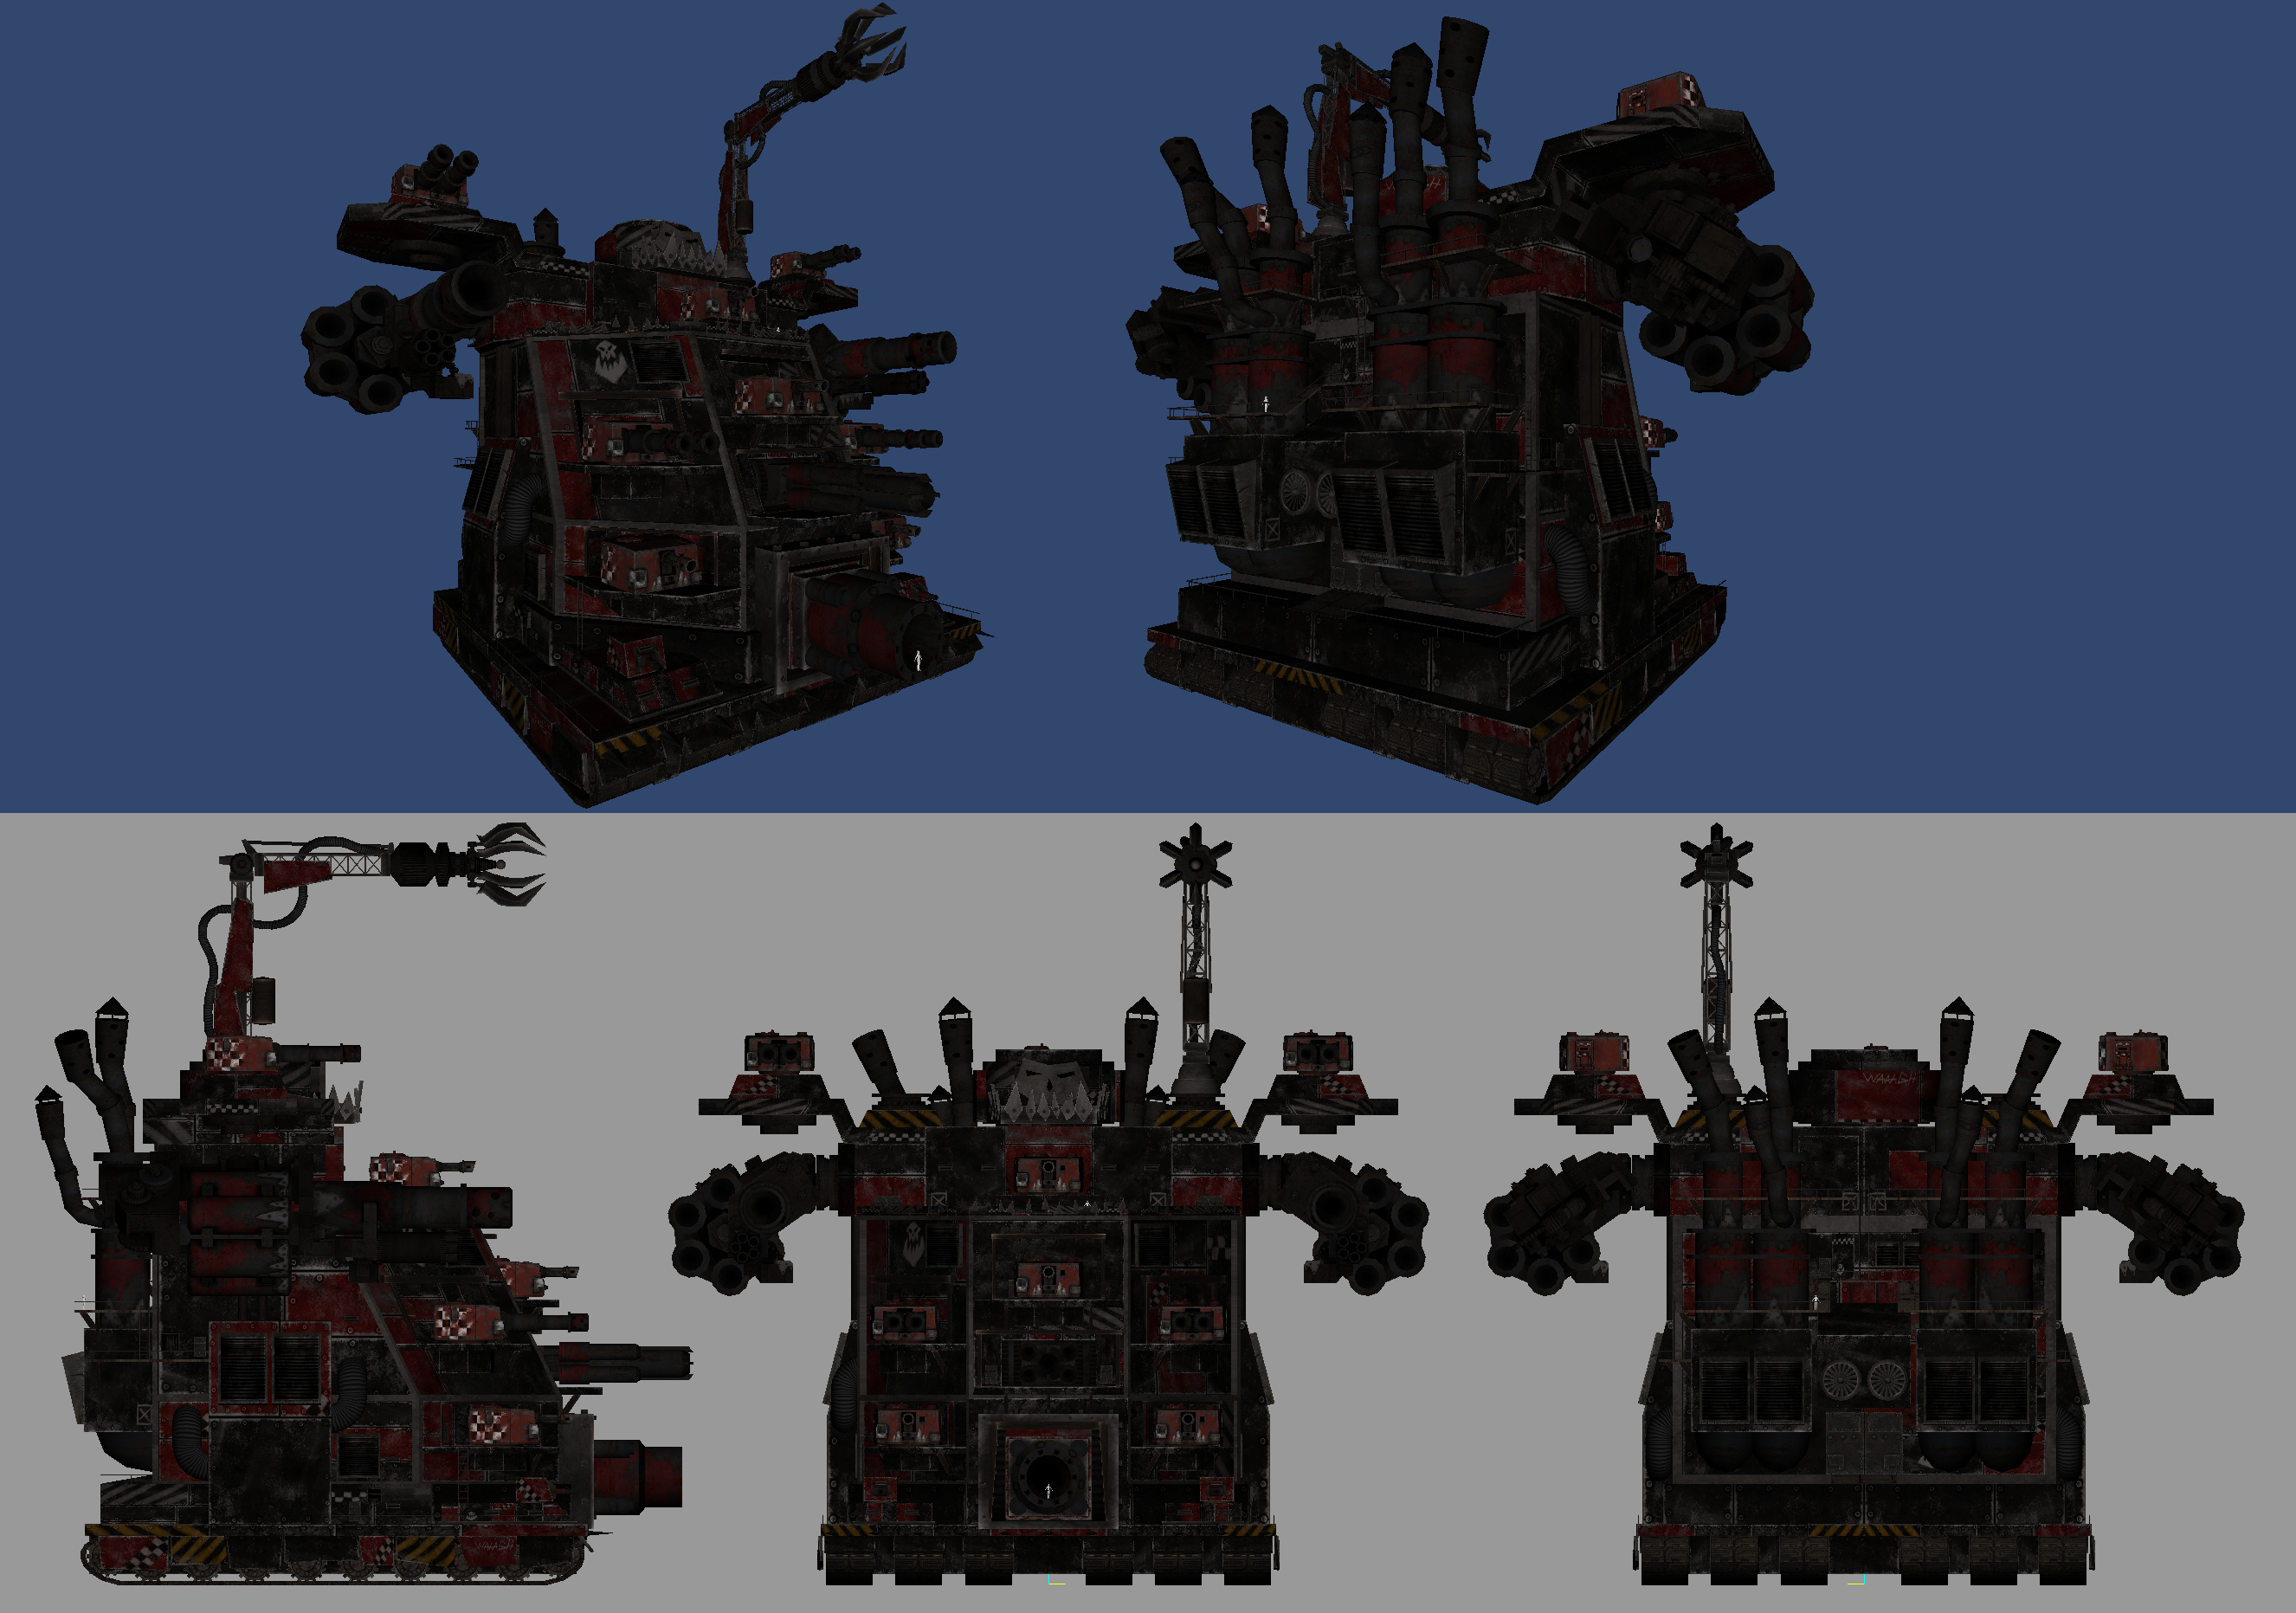 Ork Mega Gargant redesign/modernization image - Warhammer 40K Fan Group.